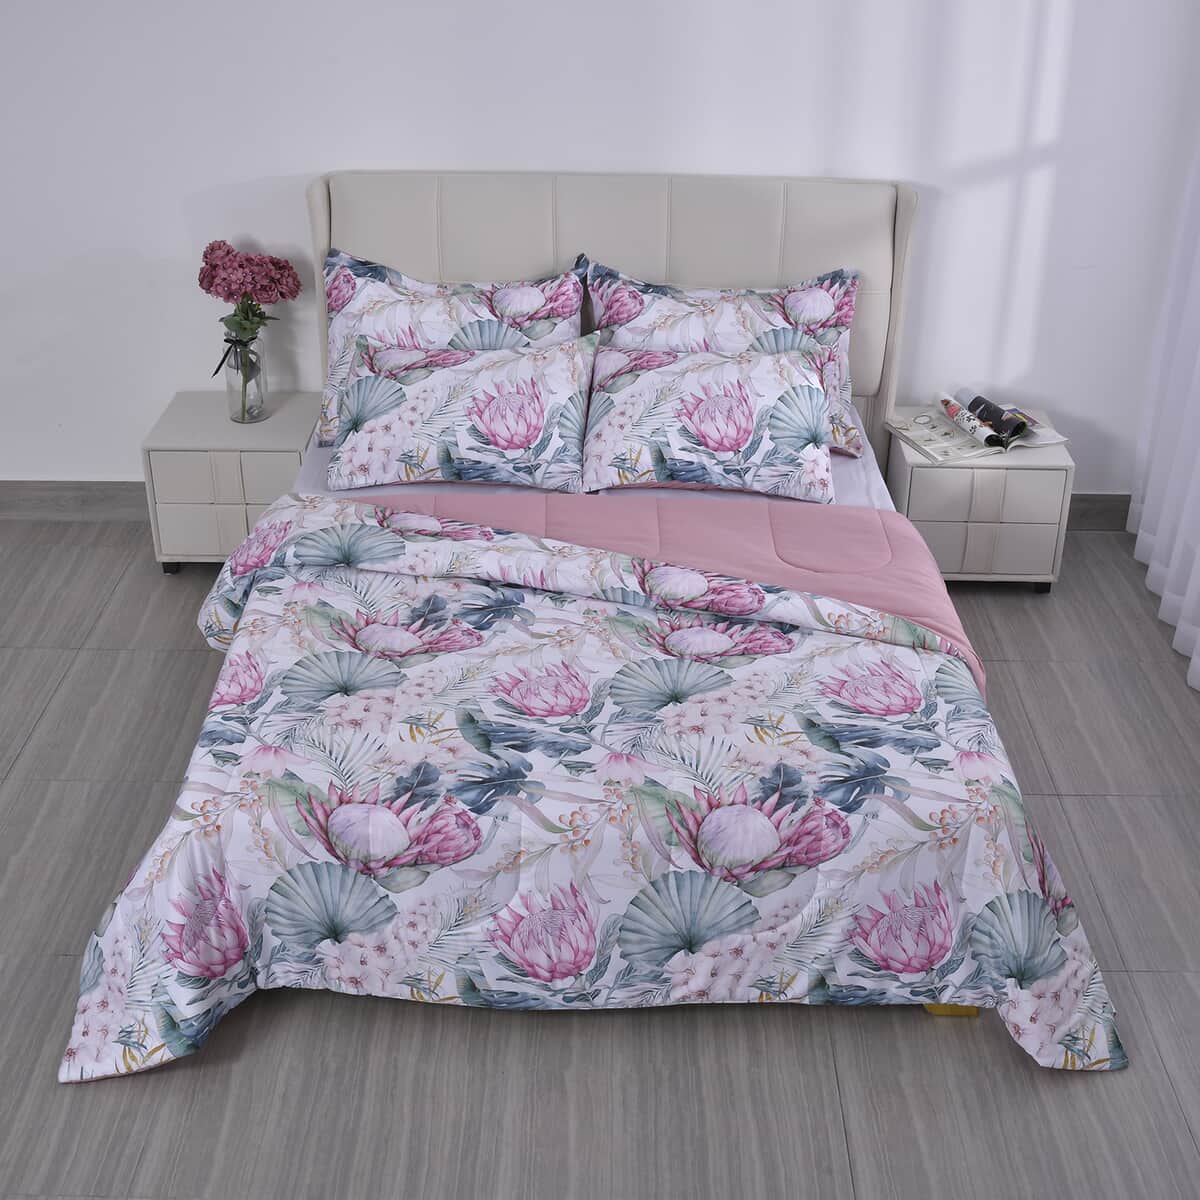 Homesmart Pink Digital Floral Printed Polyester 5pcs Comforter Set - King image number 1